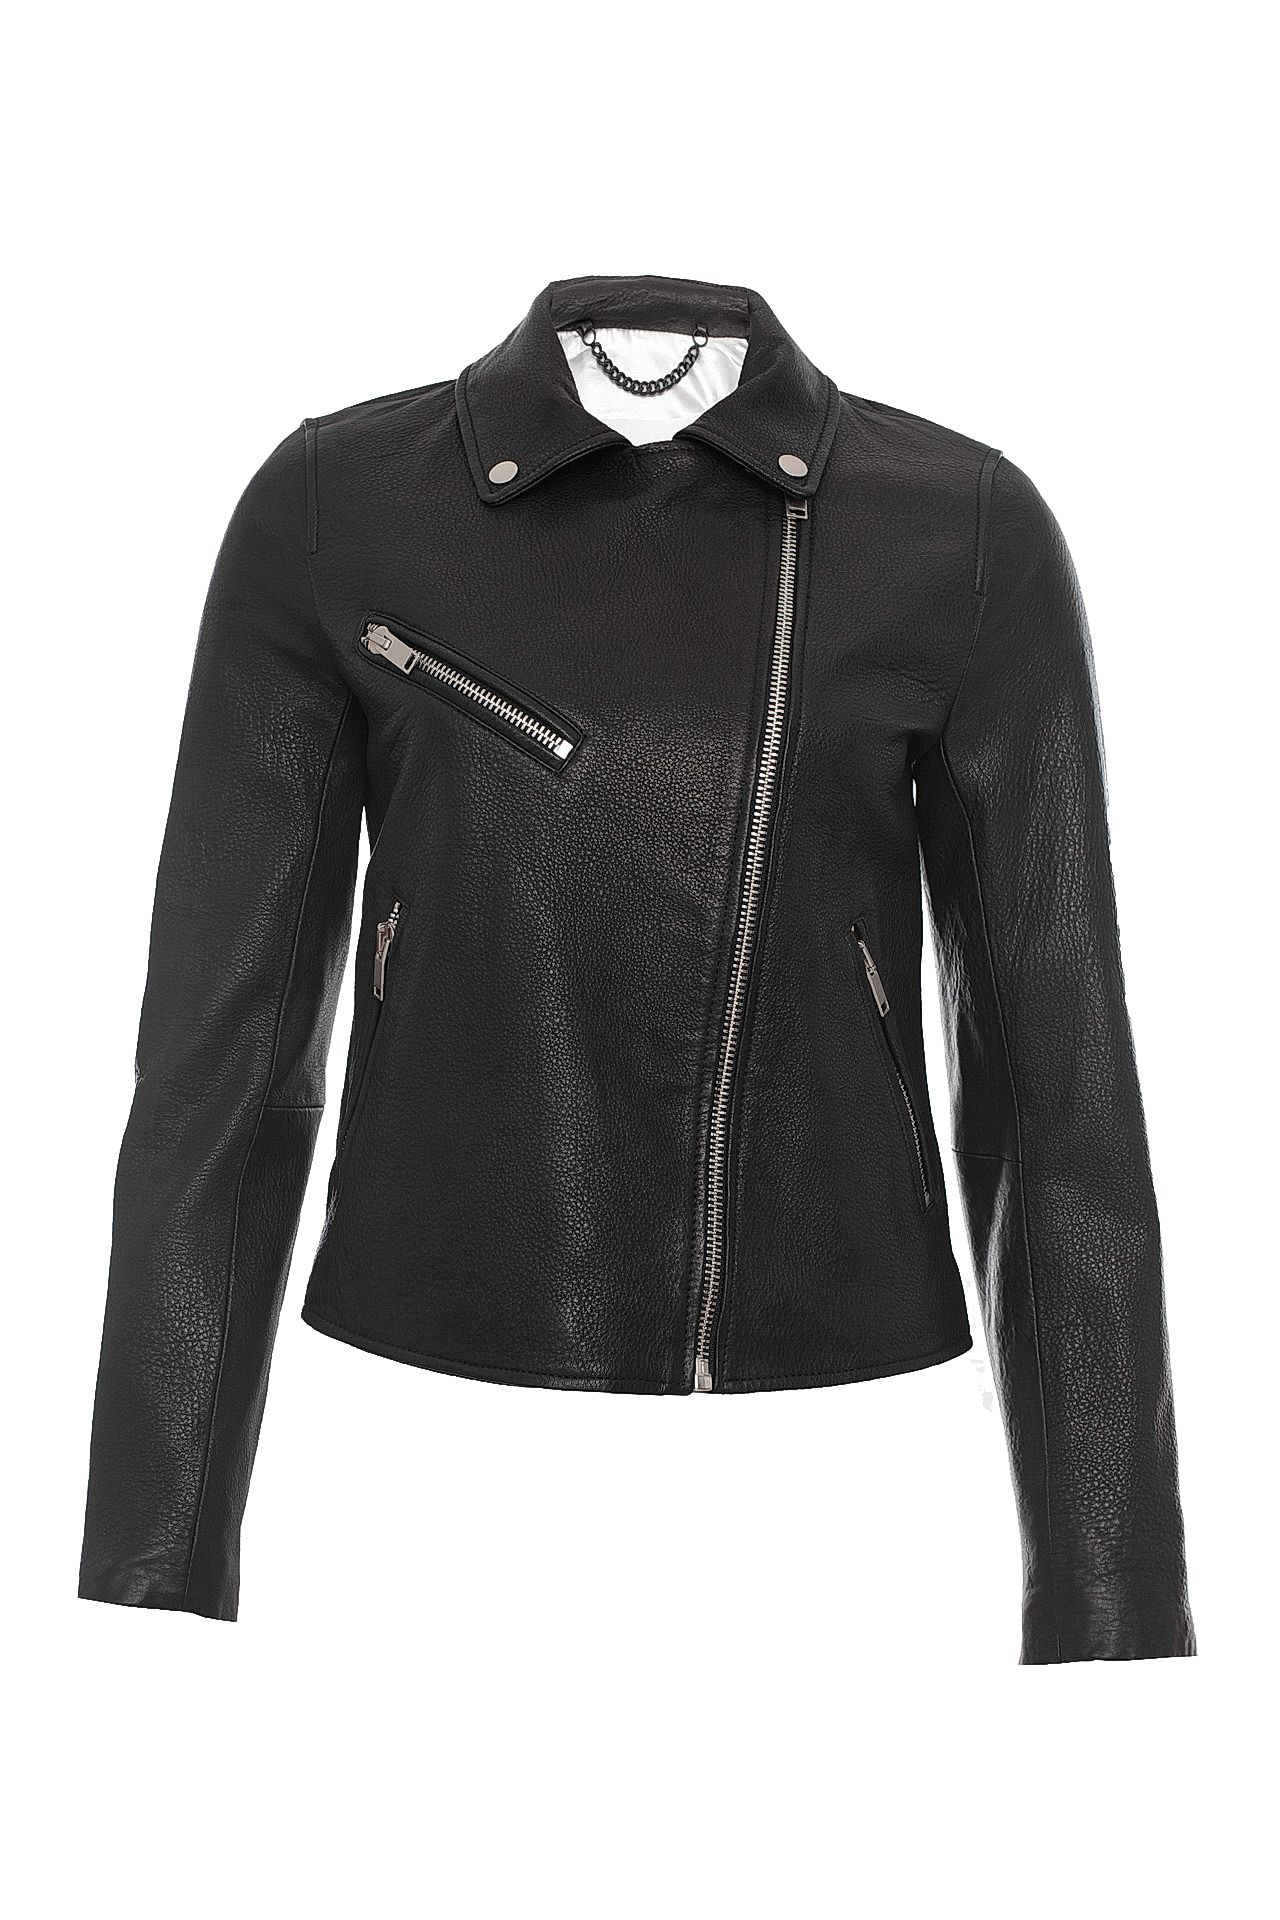 Одежда женская Куртка DOMA (6151/18.1). Купить за 40250 руб.